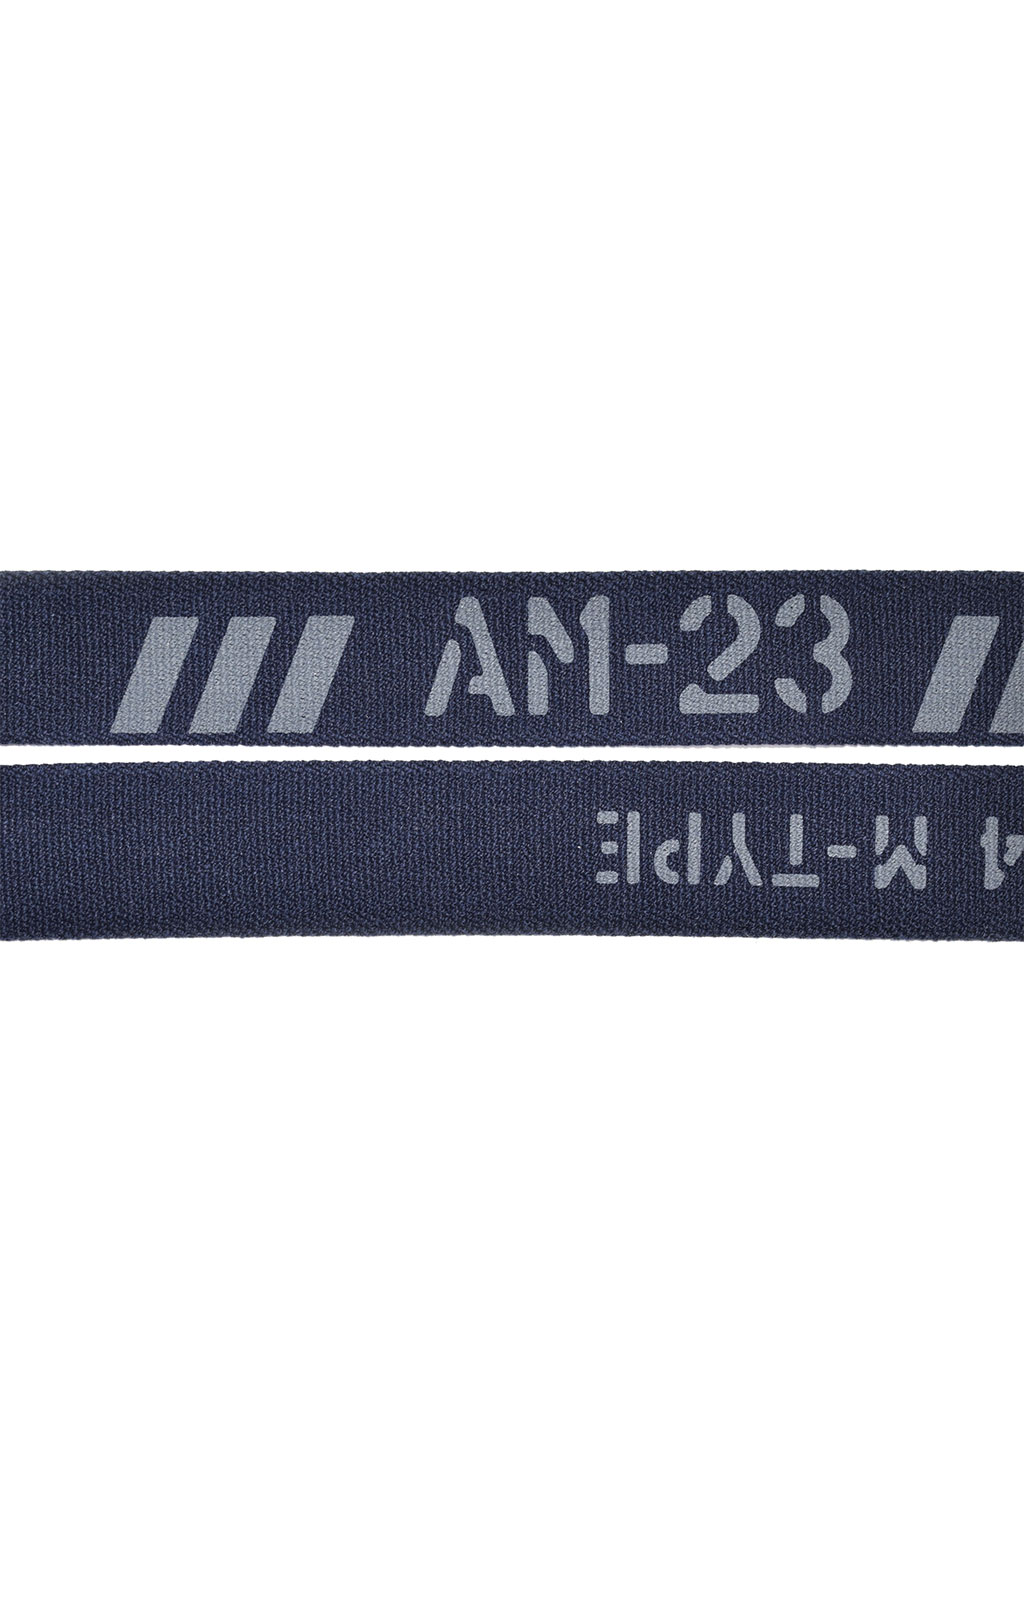 Ремень эластичный AERONAUTICA MILITARE SS 21/IT blue navy (CI 261) 